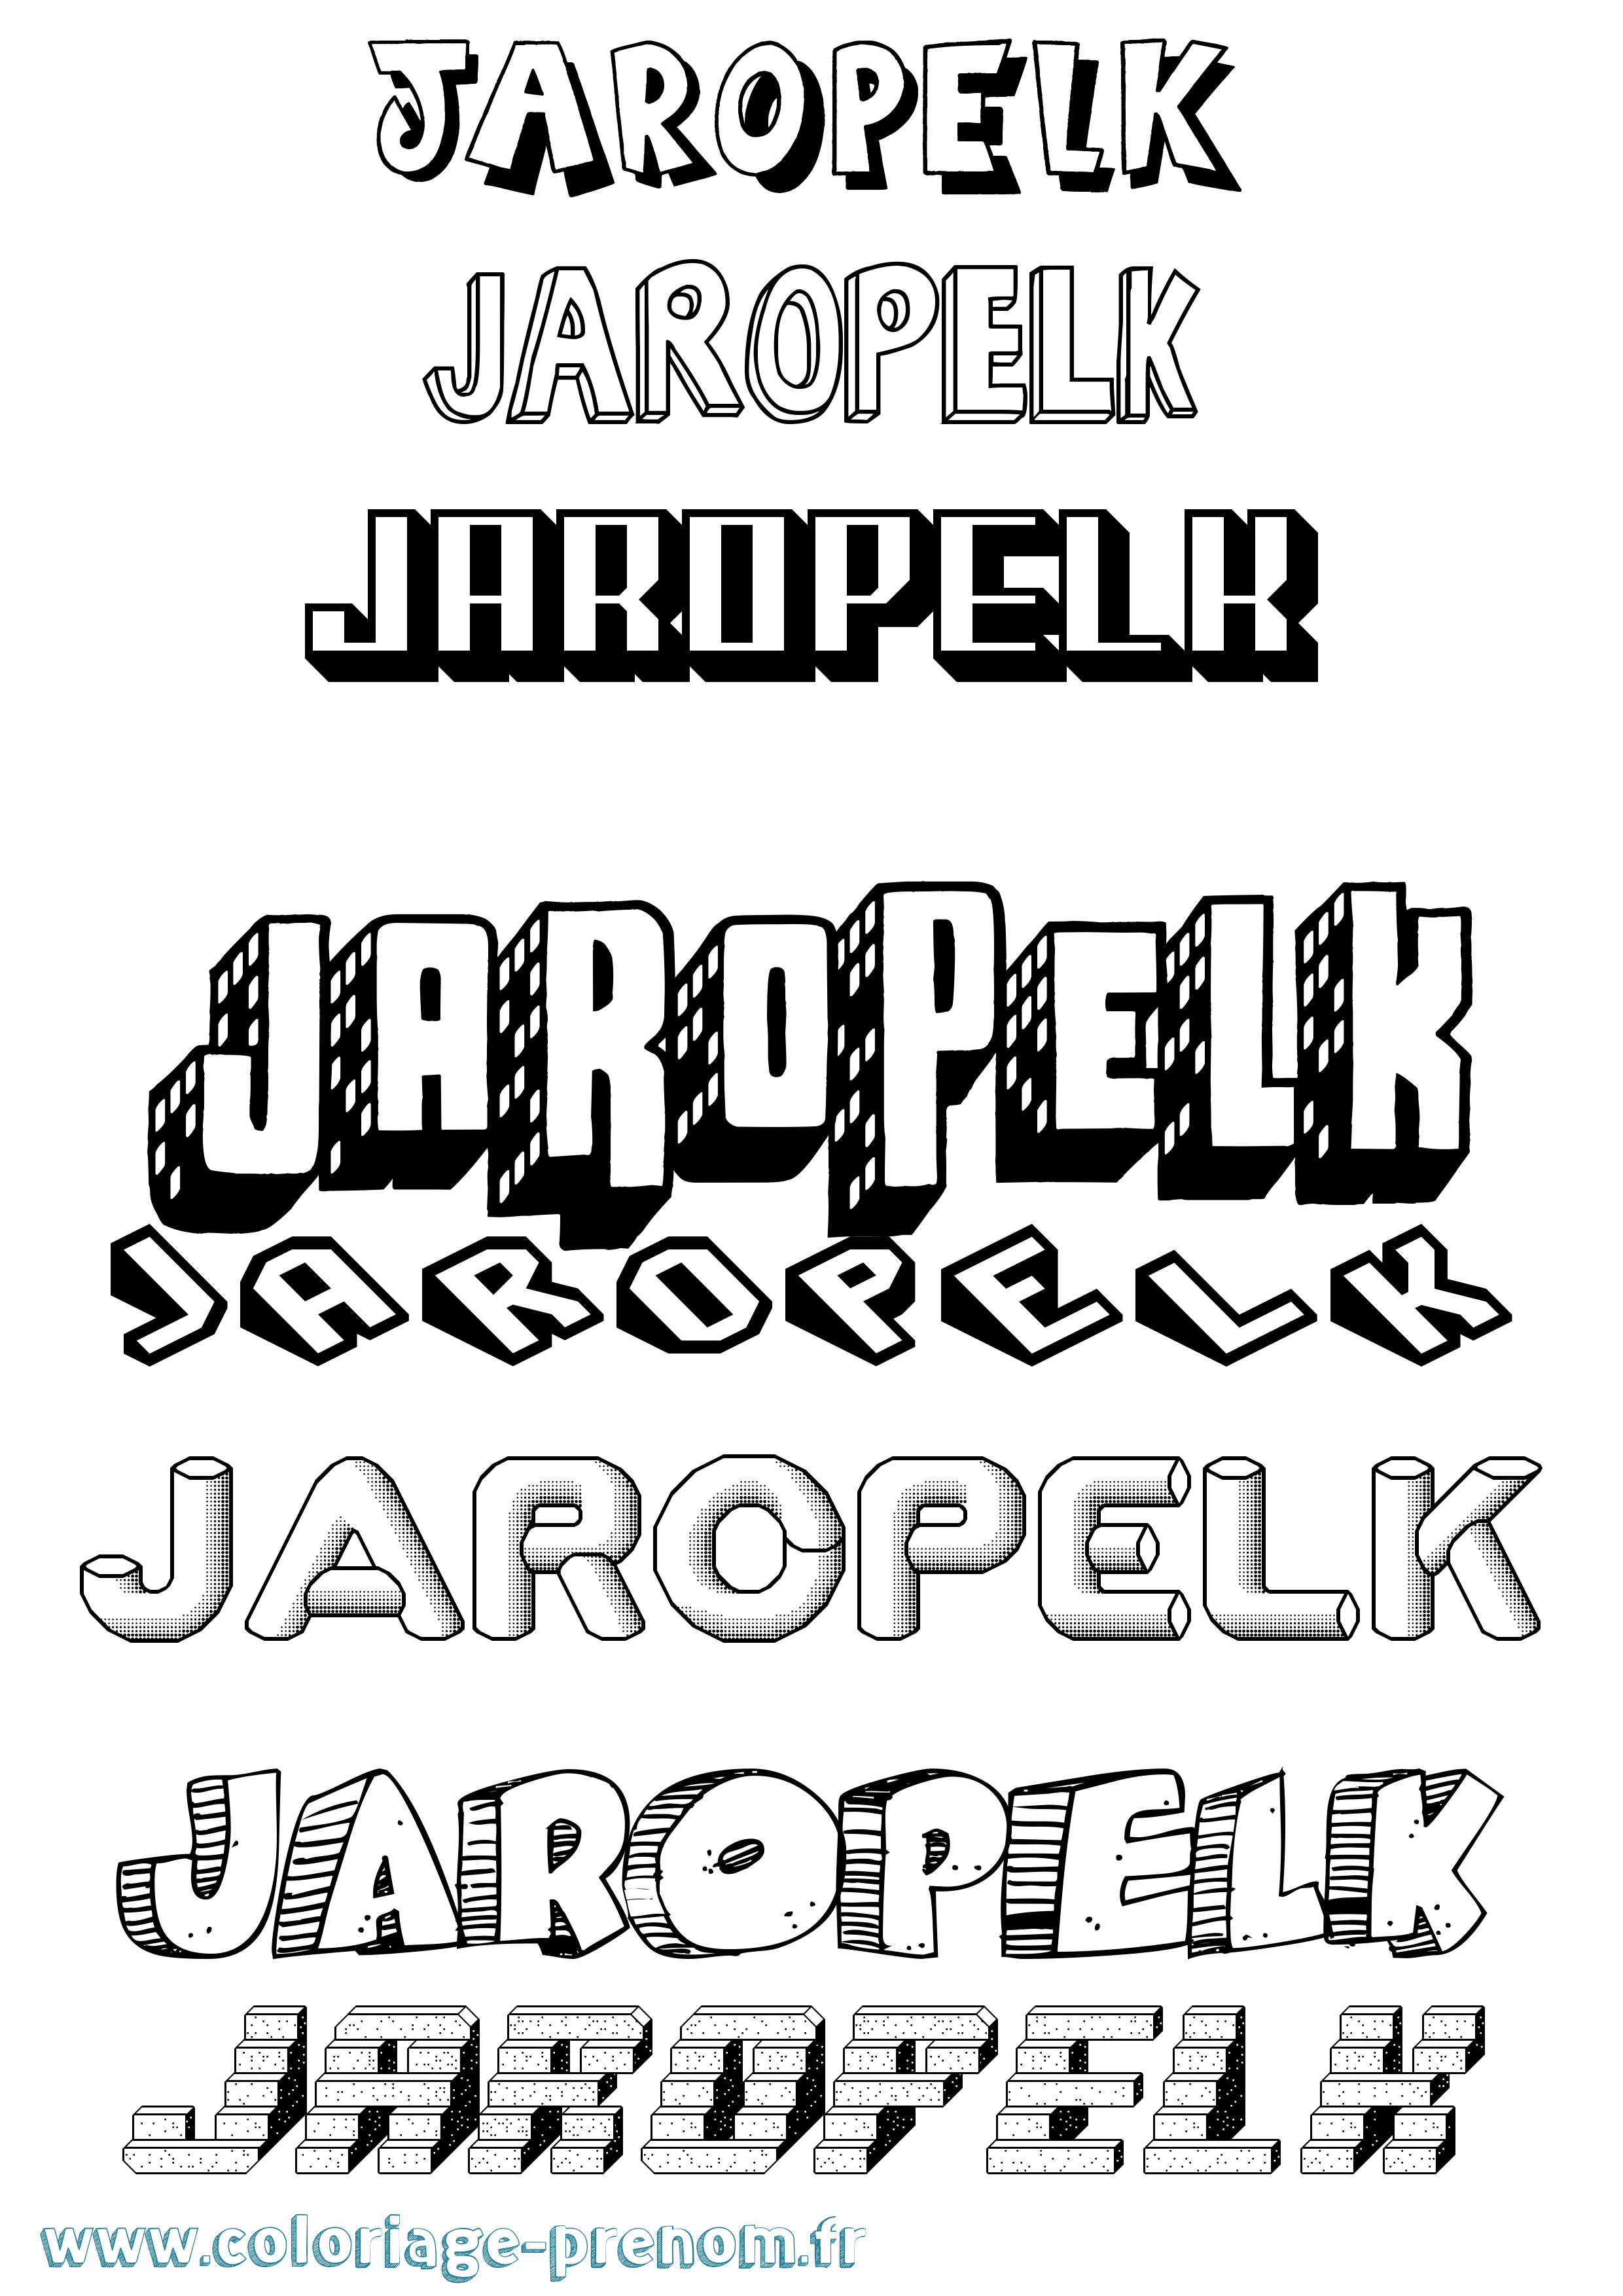 Coloriage prénom Jaropelk Effet 3D